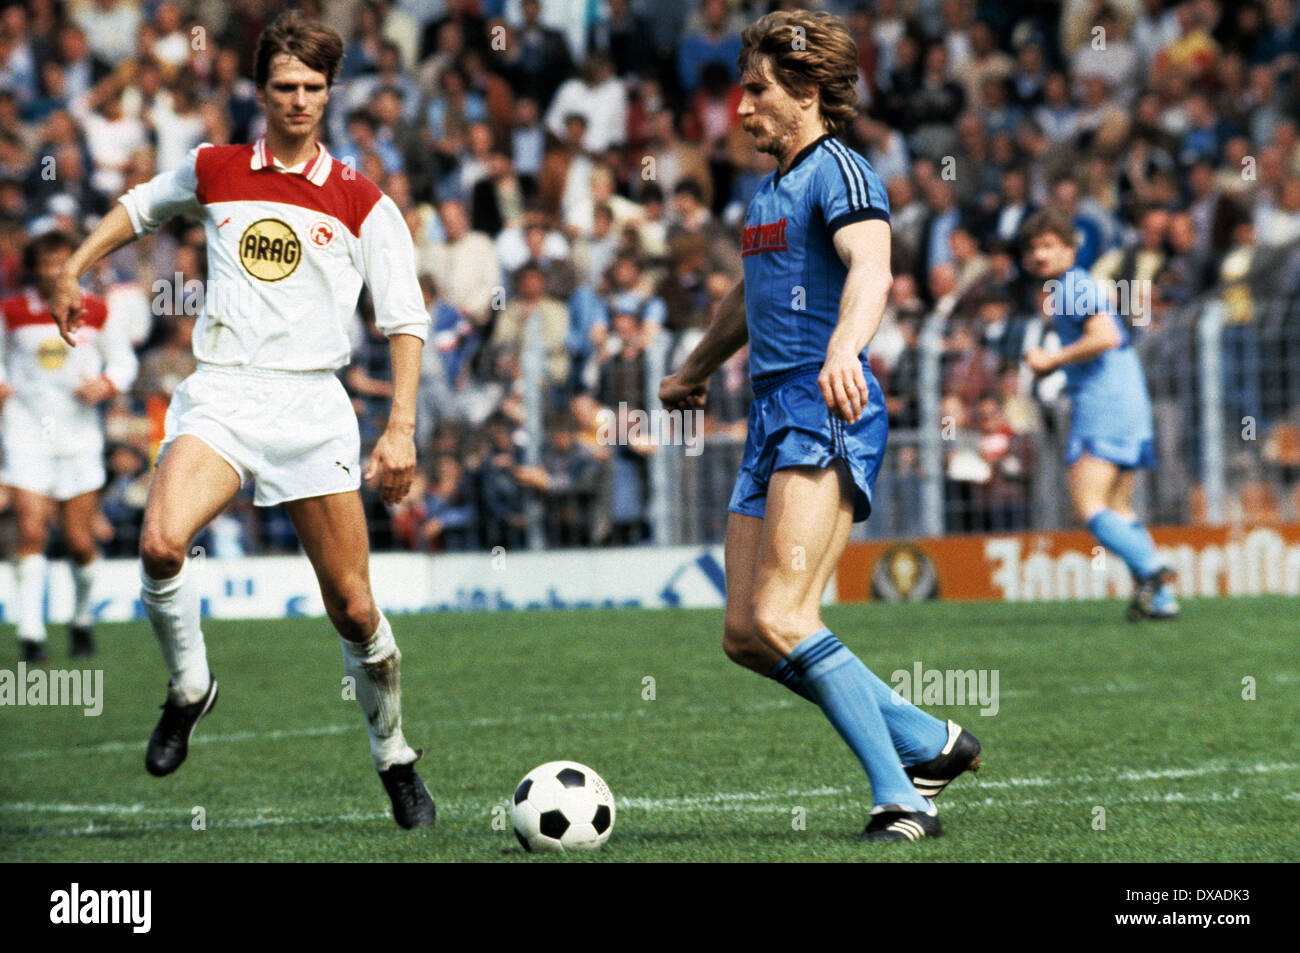 Calcio, Bundesliga, 1983/1984, Ruhr Stadio, VfL Bochum contro Fortuna Duesseldorf 6:1, scena del match, Lothar Woelk (Bochum) in possesso palla, sinistra Holger Fach (Fortuna) Foto Stock